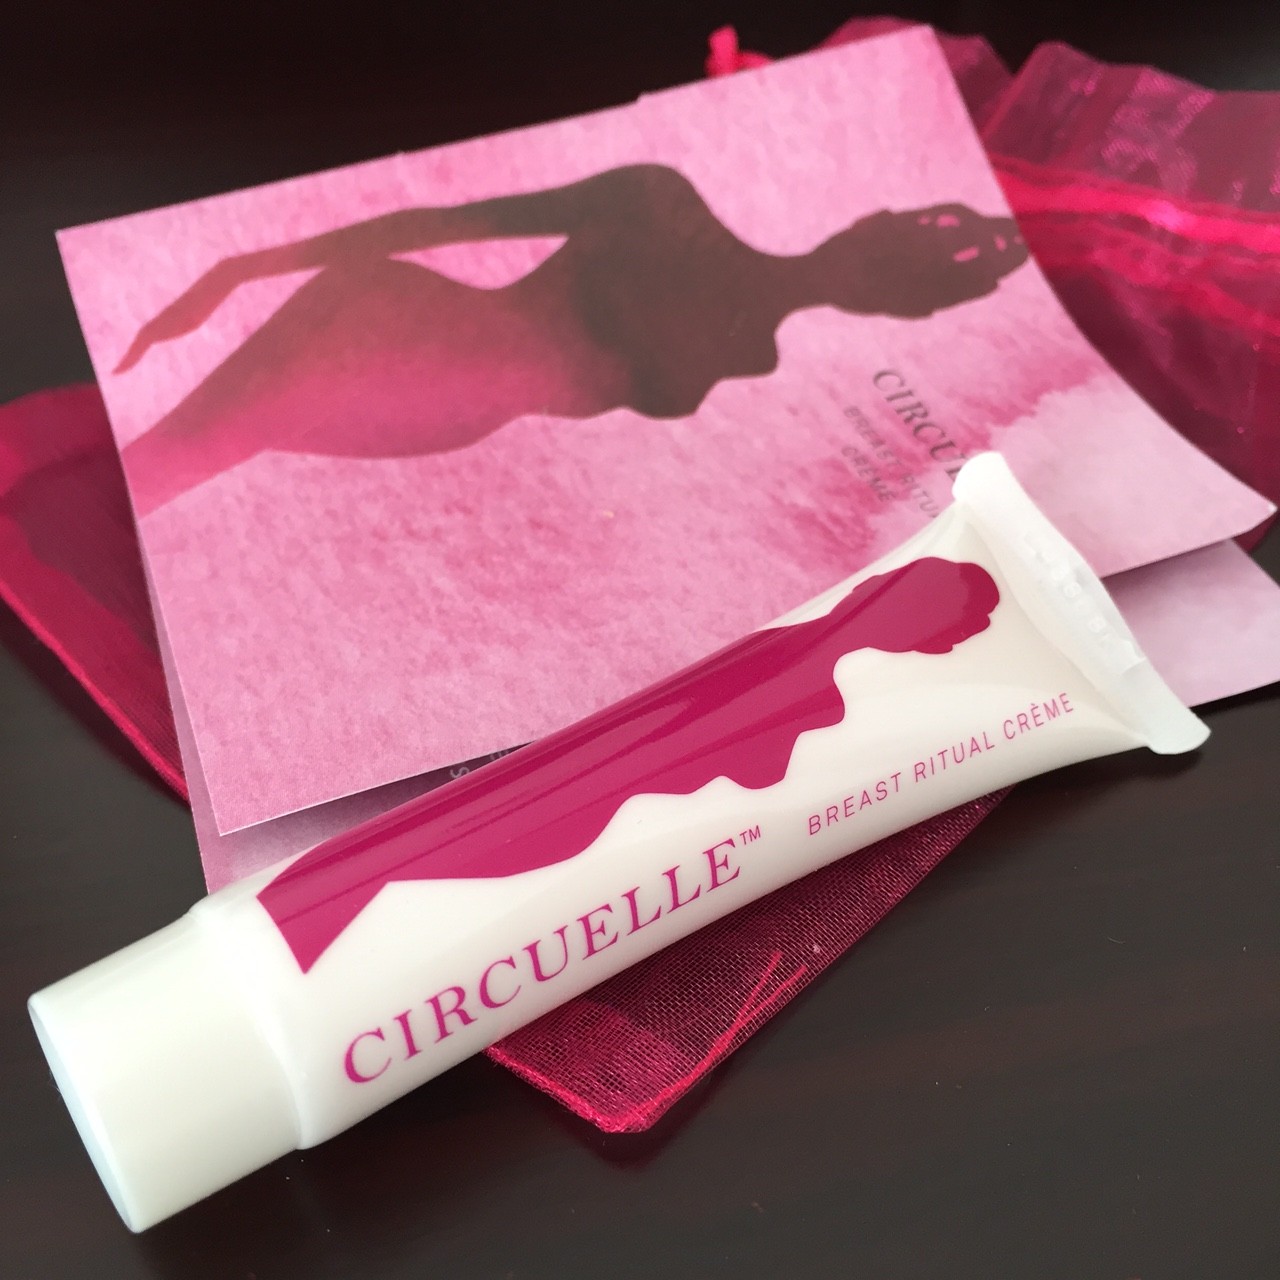 Circuelle Foundation Breast Ritual Cream